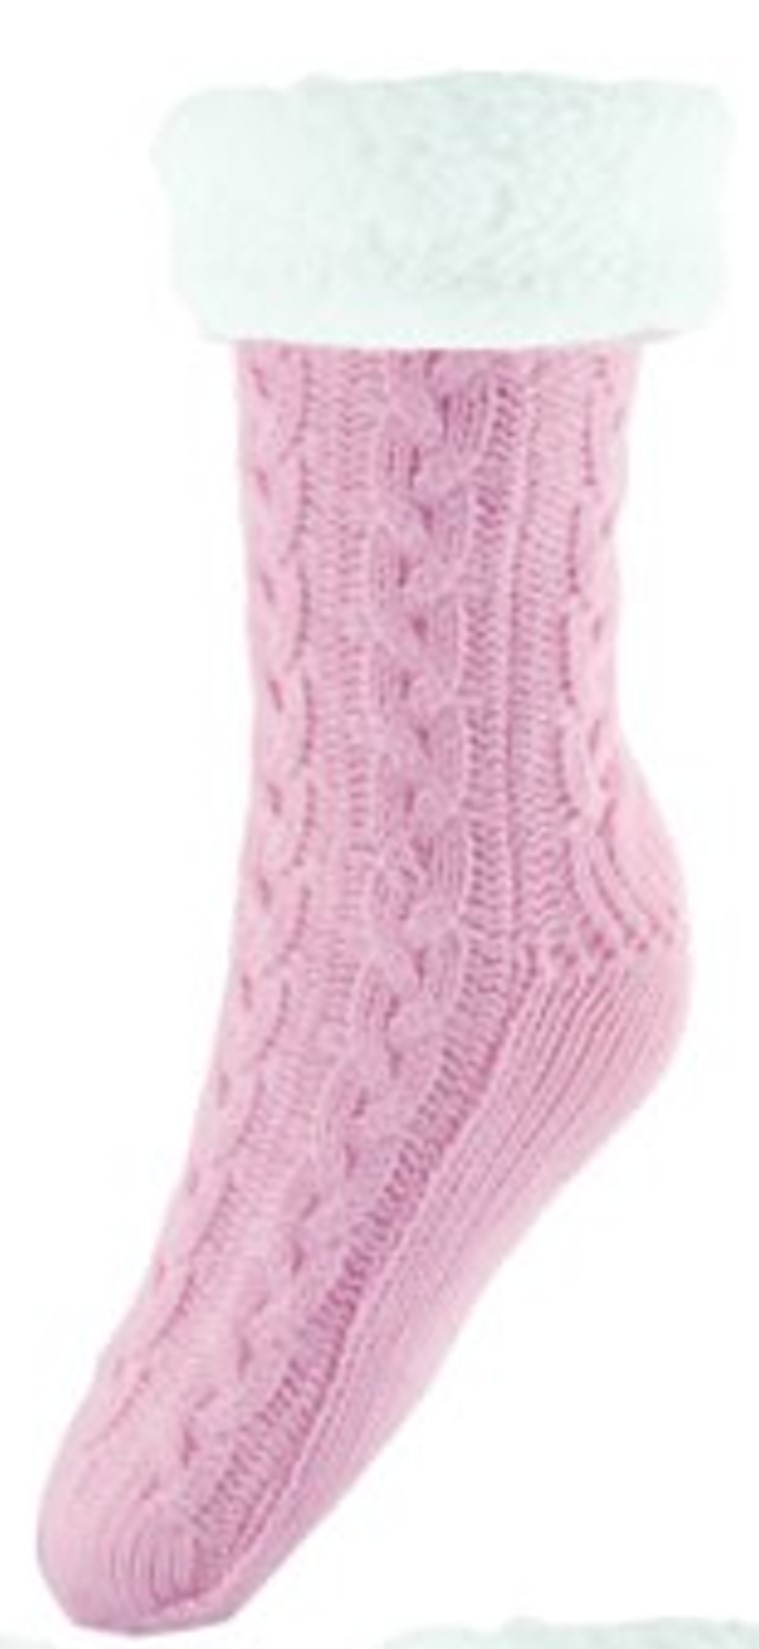 Chunky Knit Socks Pink.jpg  by Thingimijigs